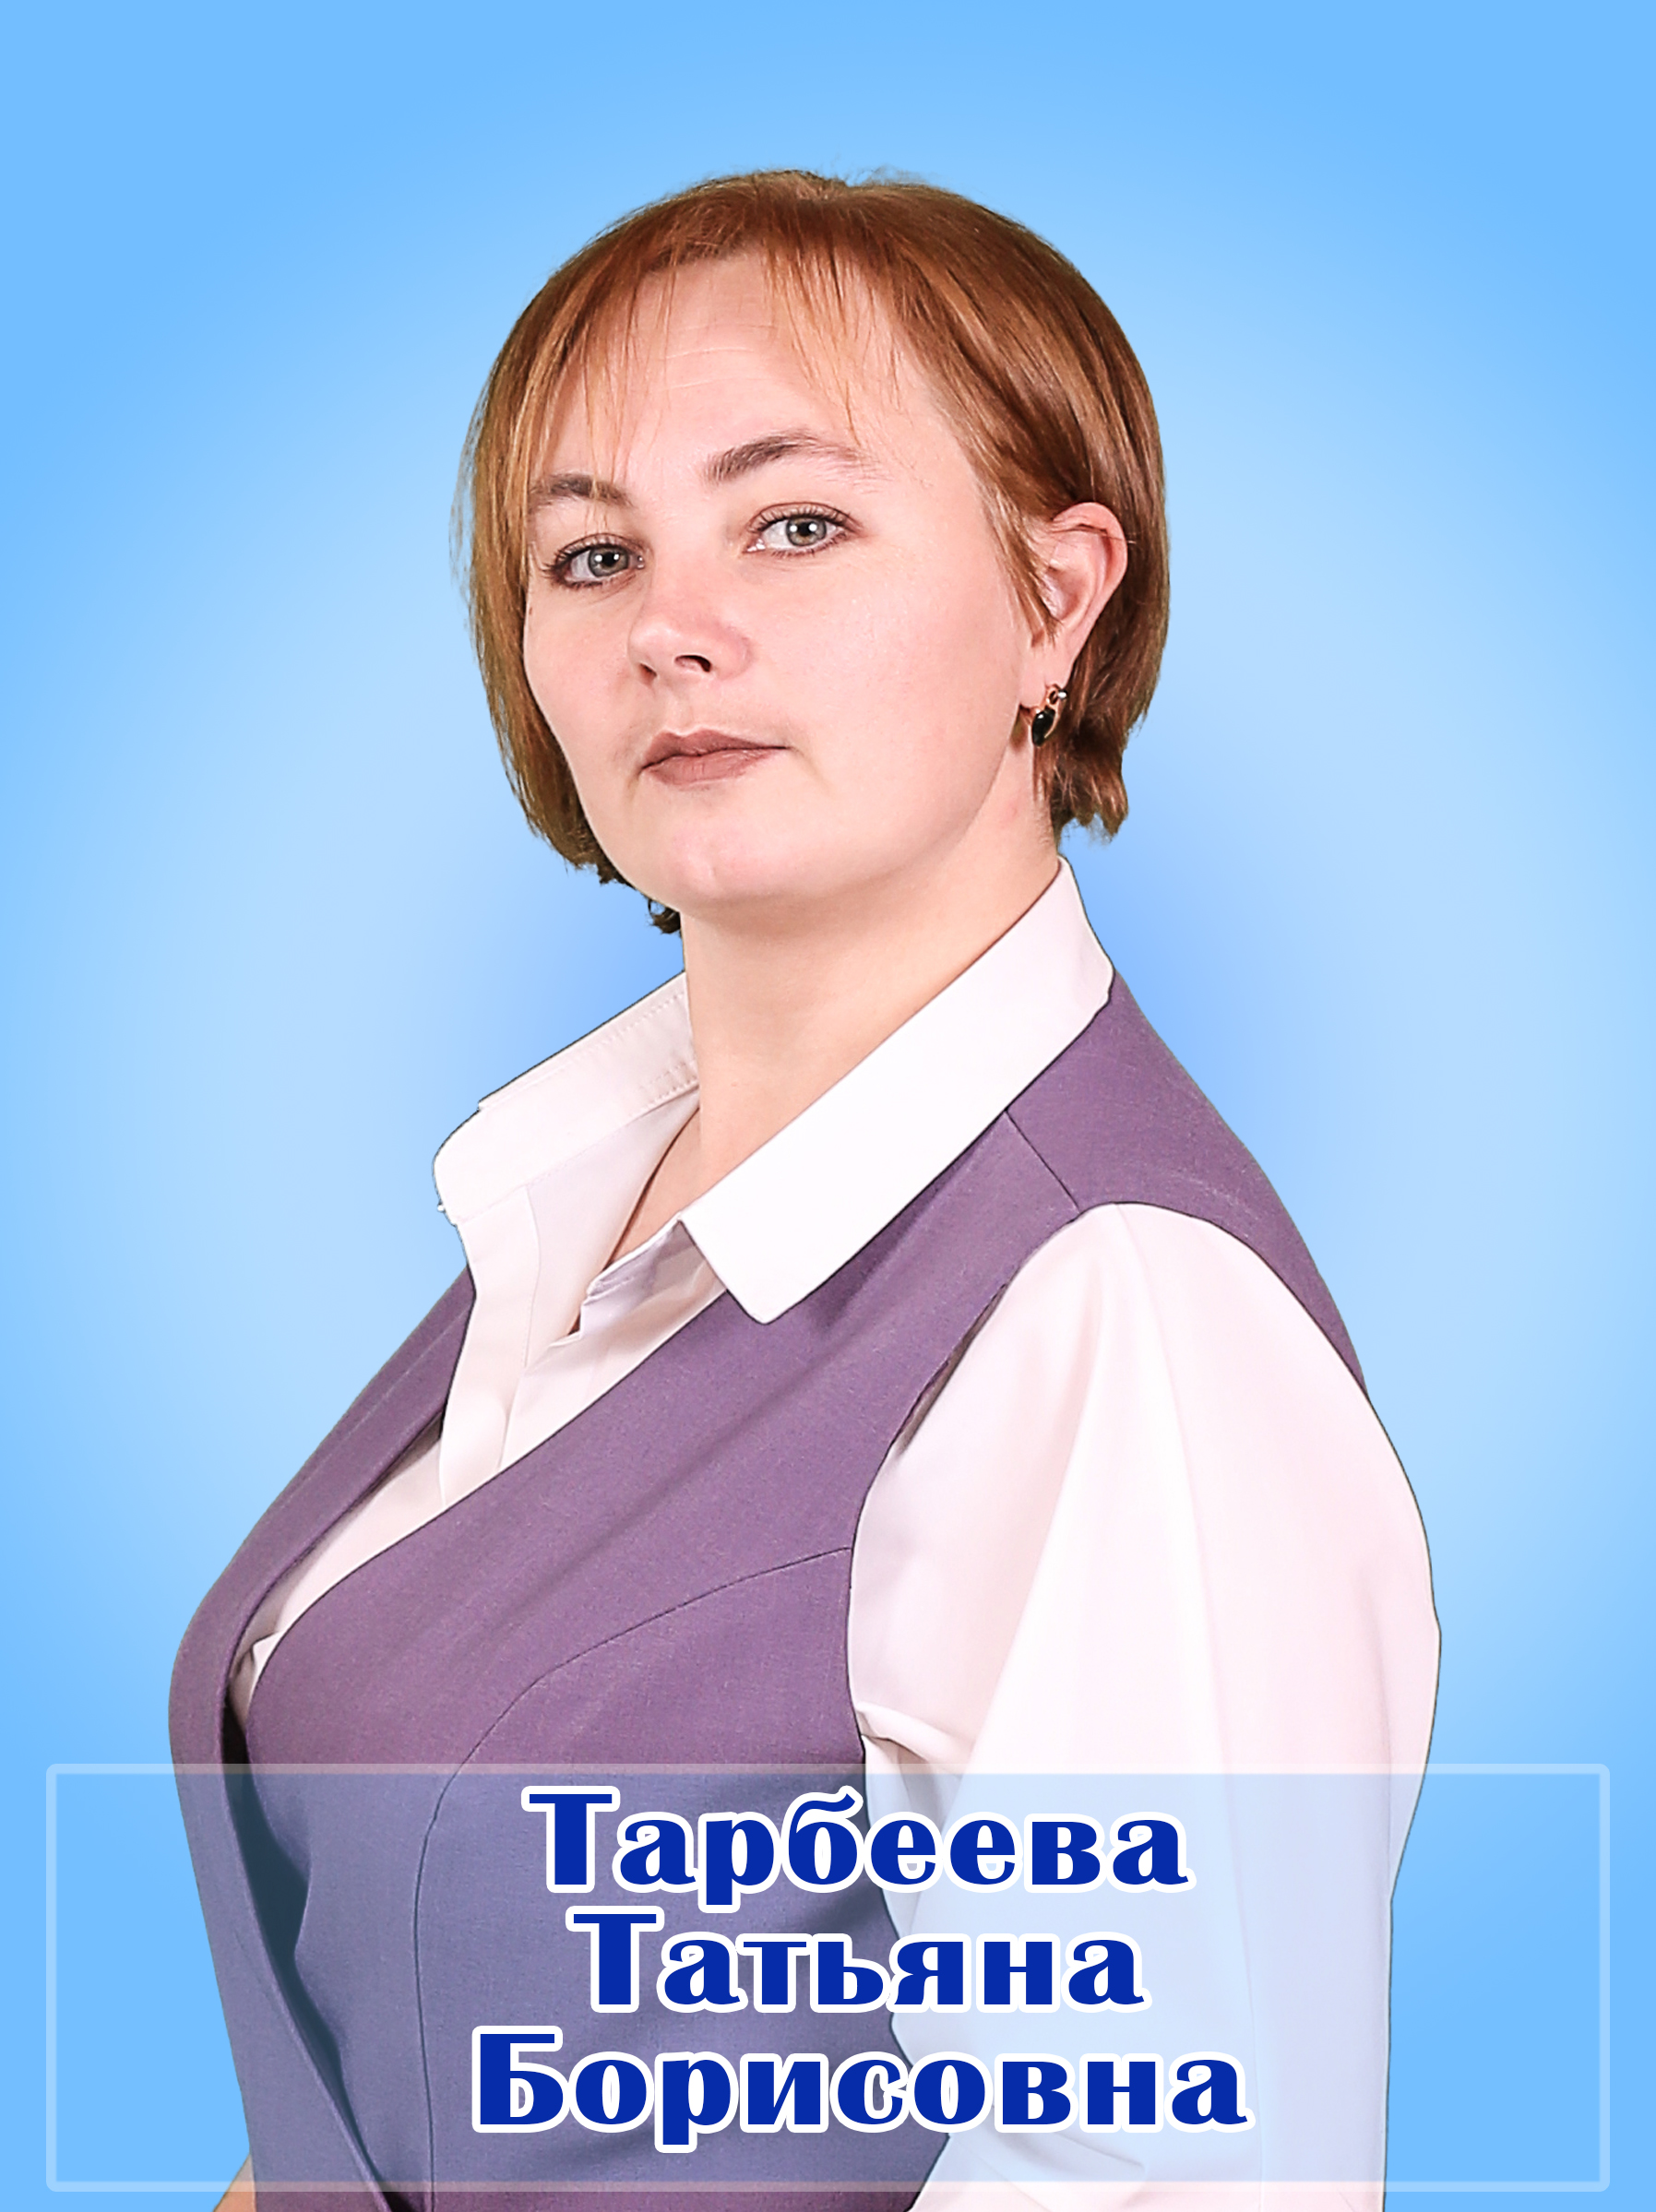 Тарбеева Татьяна Борисовна.